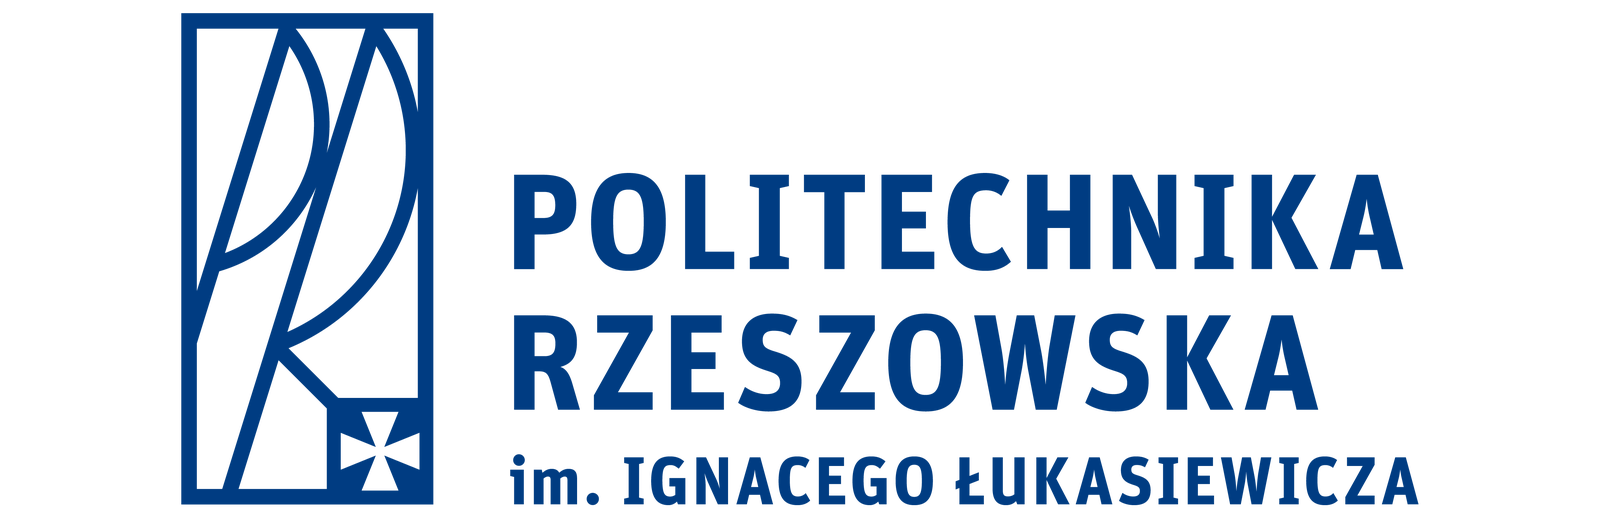 logo_prz